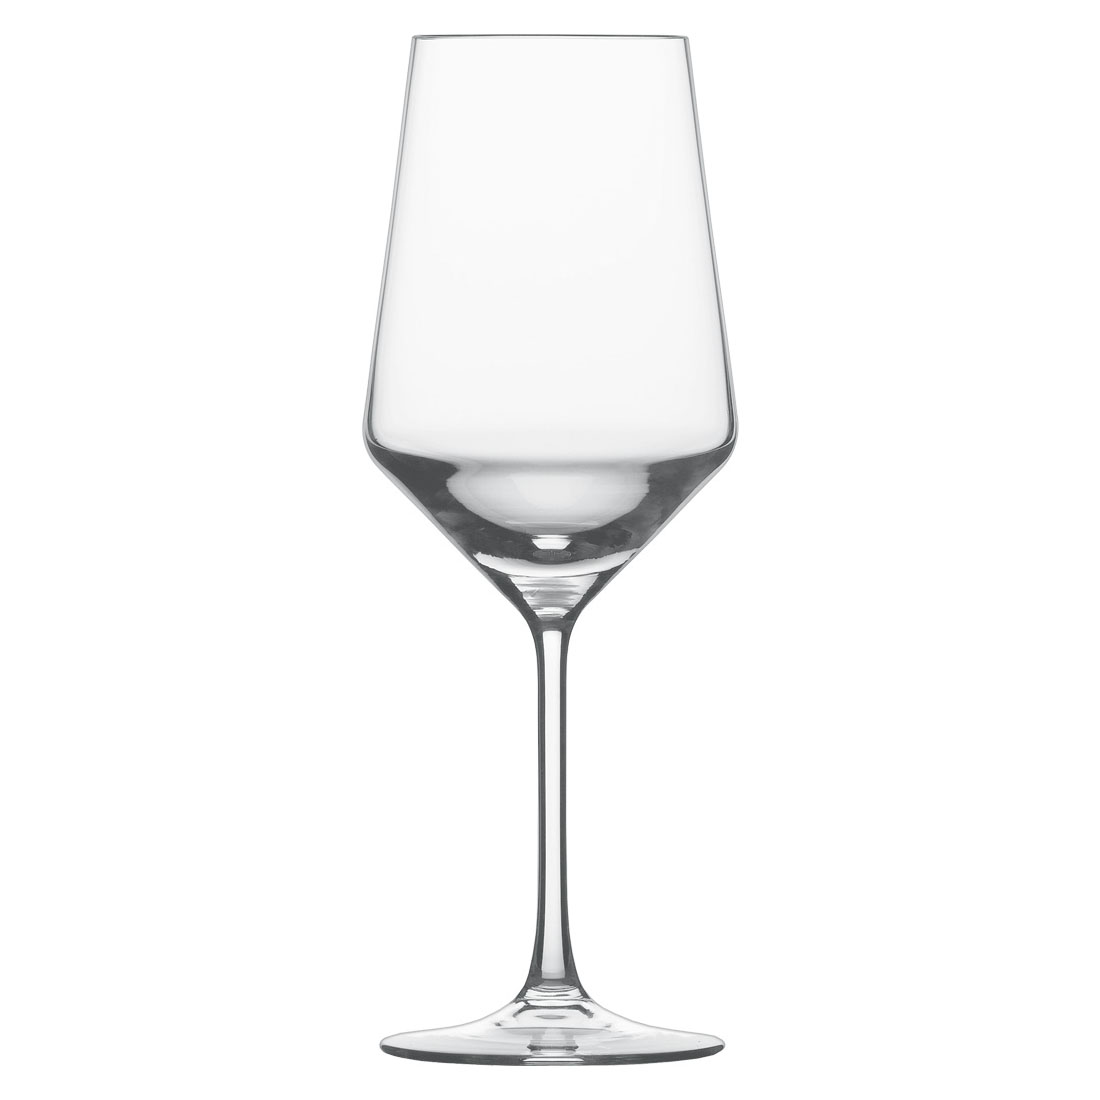 Öko Rotweinglas Pure Schott Zwiesel 54cl (Glas mit leichter Trübung)